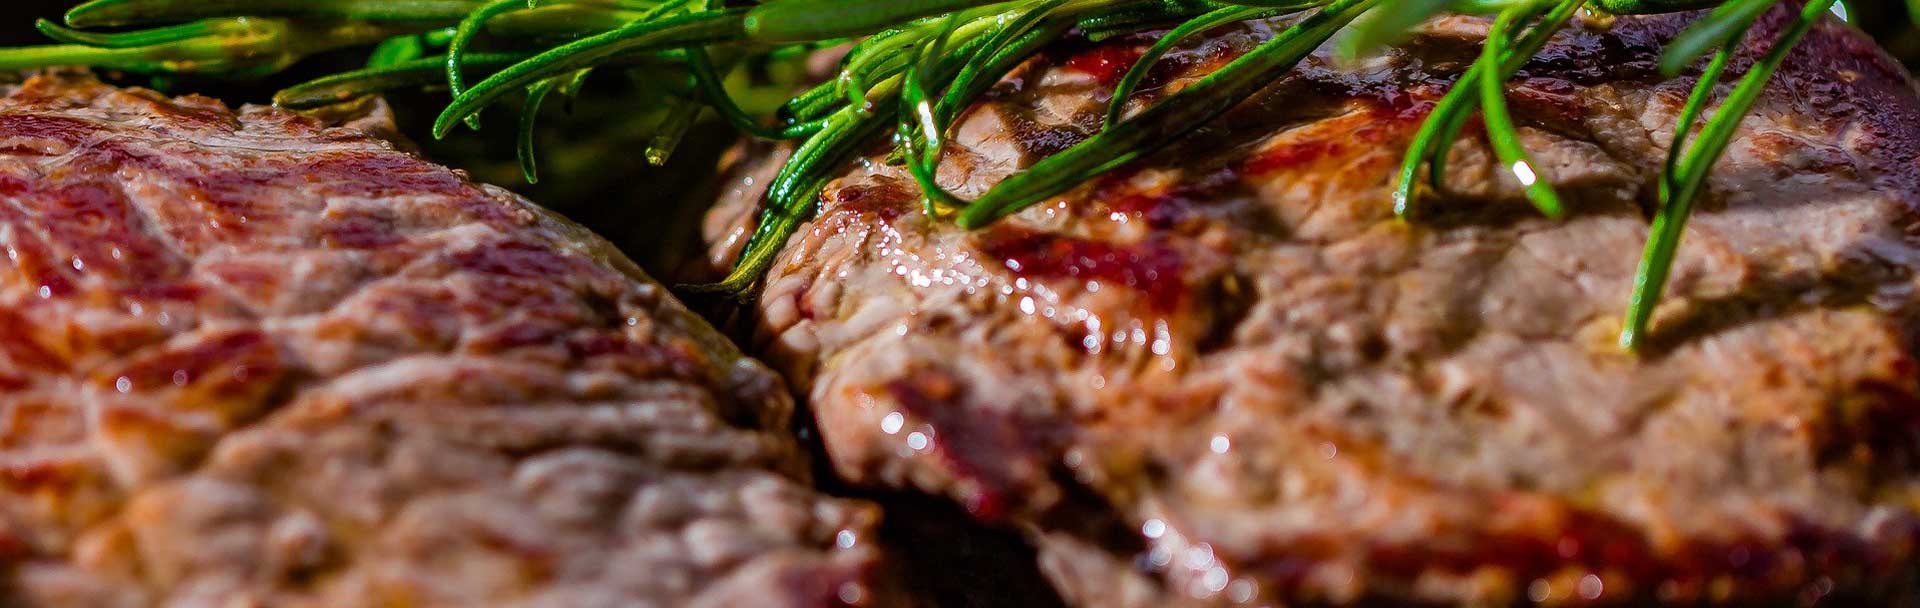 Iberico Pork Recipe: Marinated Pluma with patats bravas